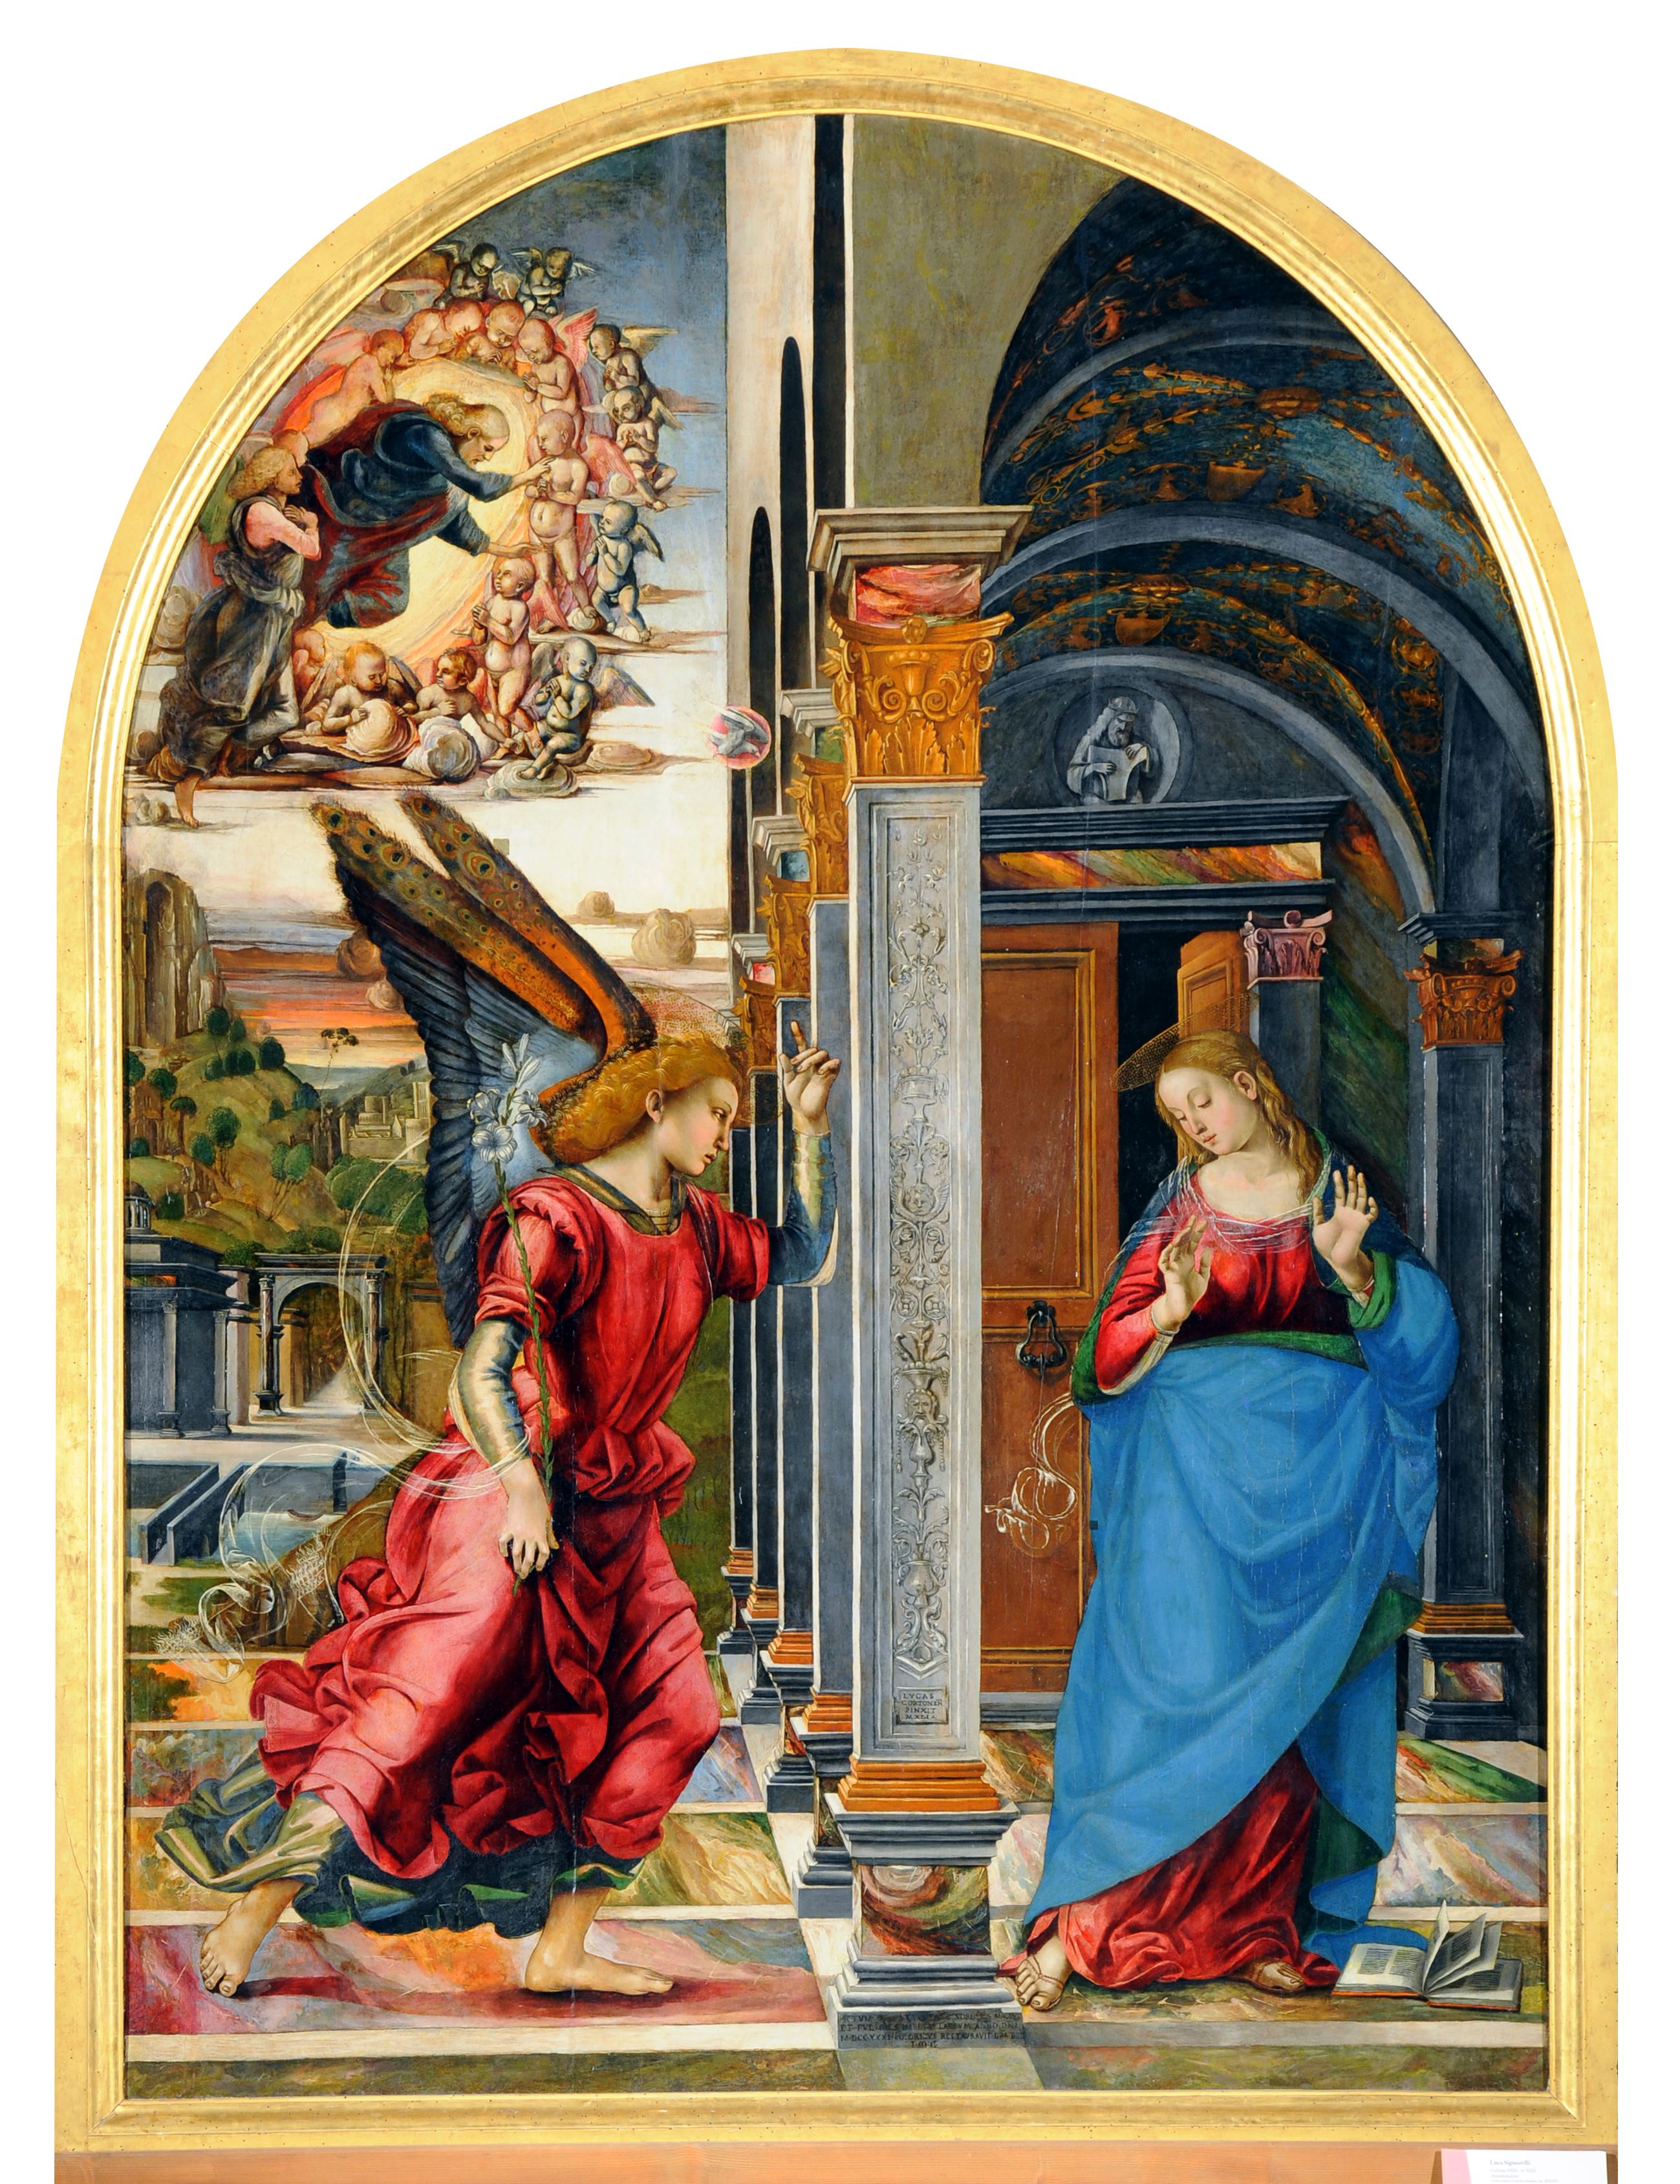 Luca Signorelli, “Annunciazione”, 1491. Volterra, Parrocchia Basilica Cattedrale presso Pinacoteca Civica di Volterra